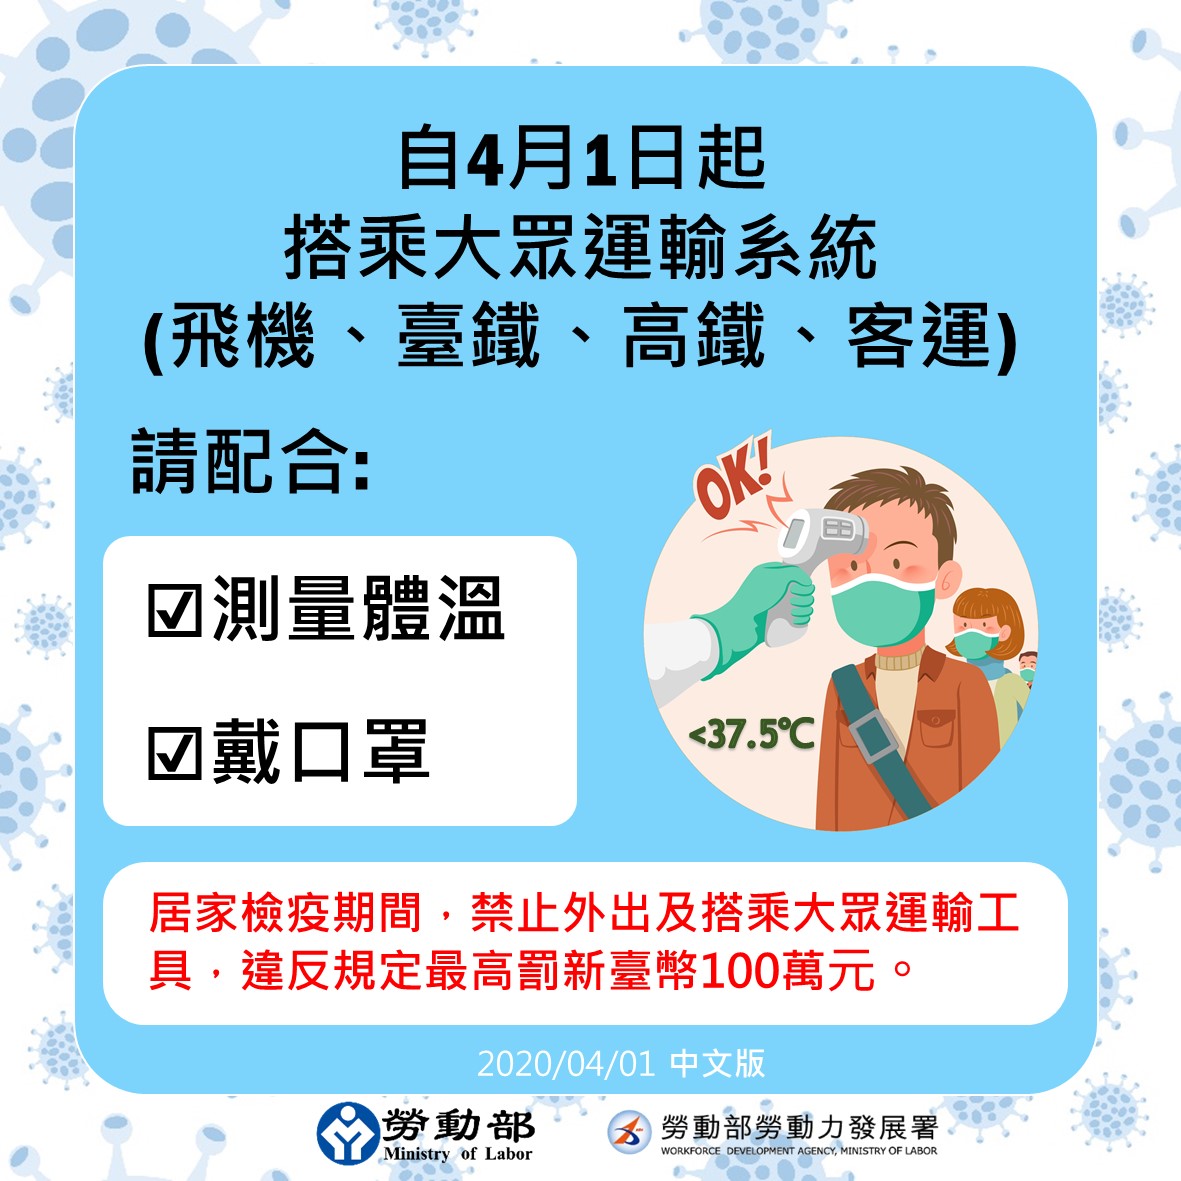 自4月1日起搭乘大眾運輸系統請配合測量體溫戴口罩-中文.jpg